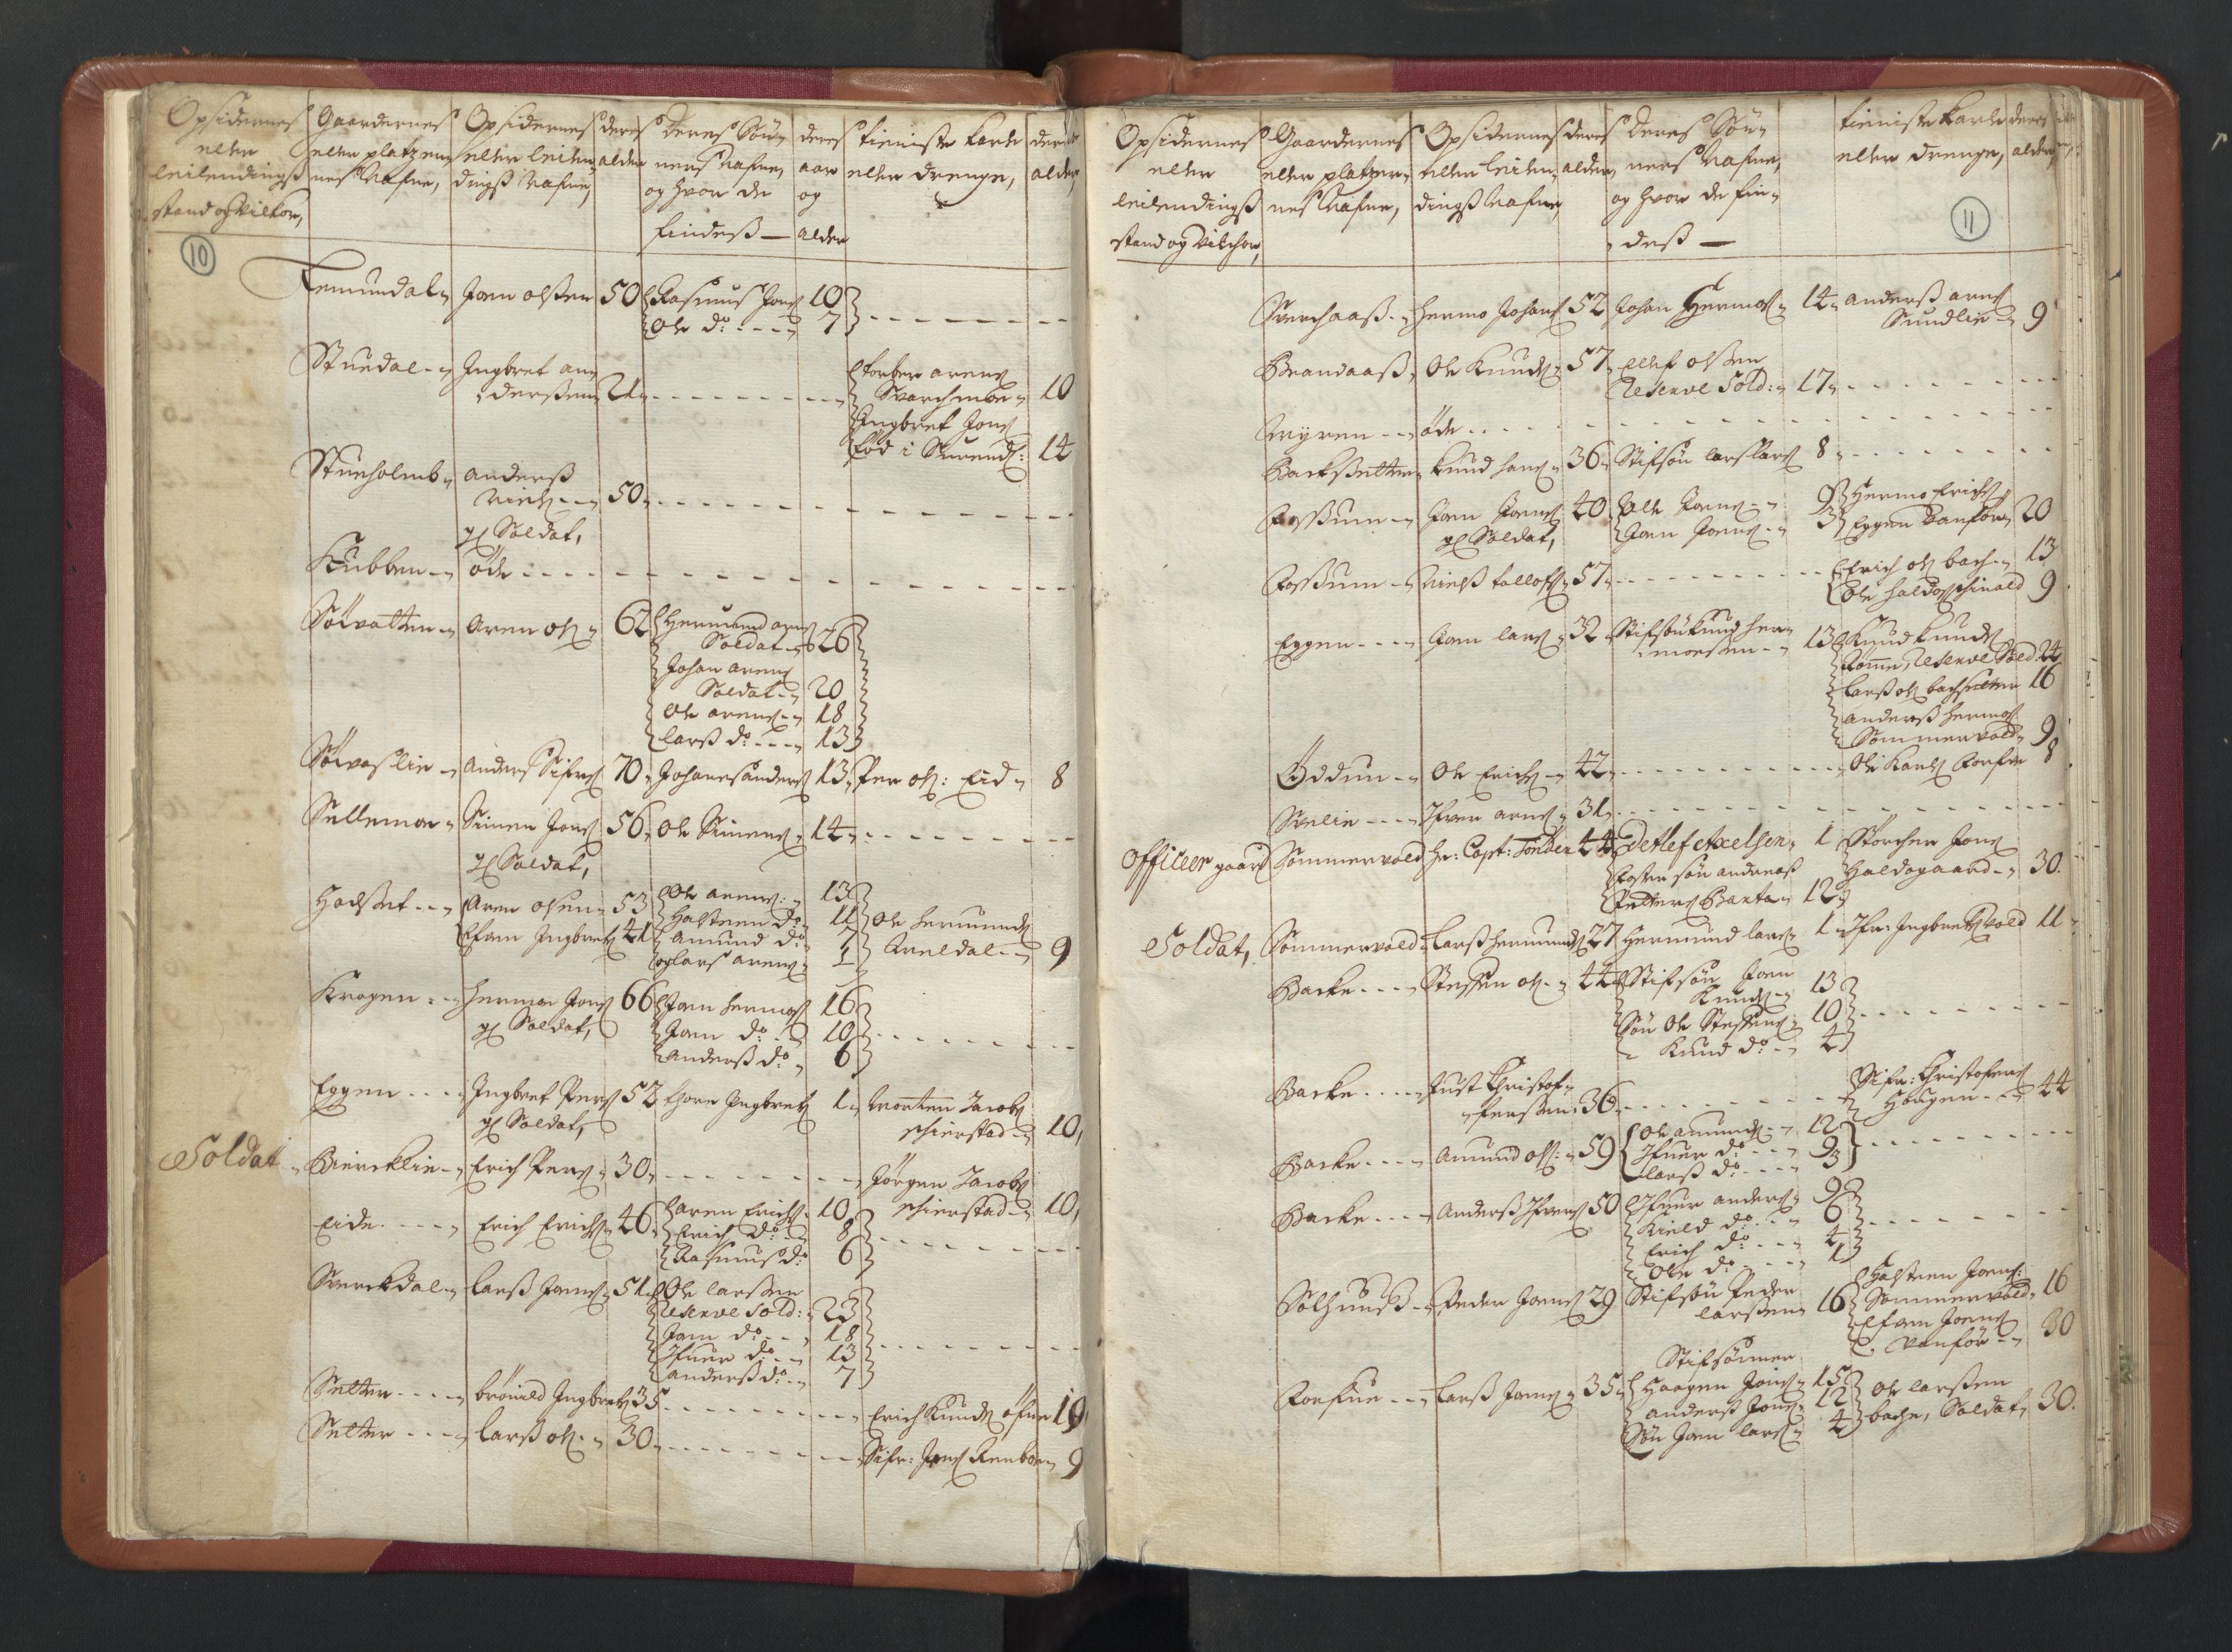 RA, Manntallet 1701, nr. 13: Orkdal fogderi og Gauldal fogderi med Røros kobberverk, 1701, s. 10-11